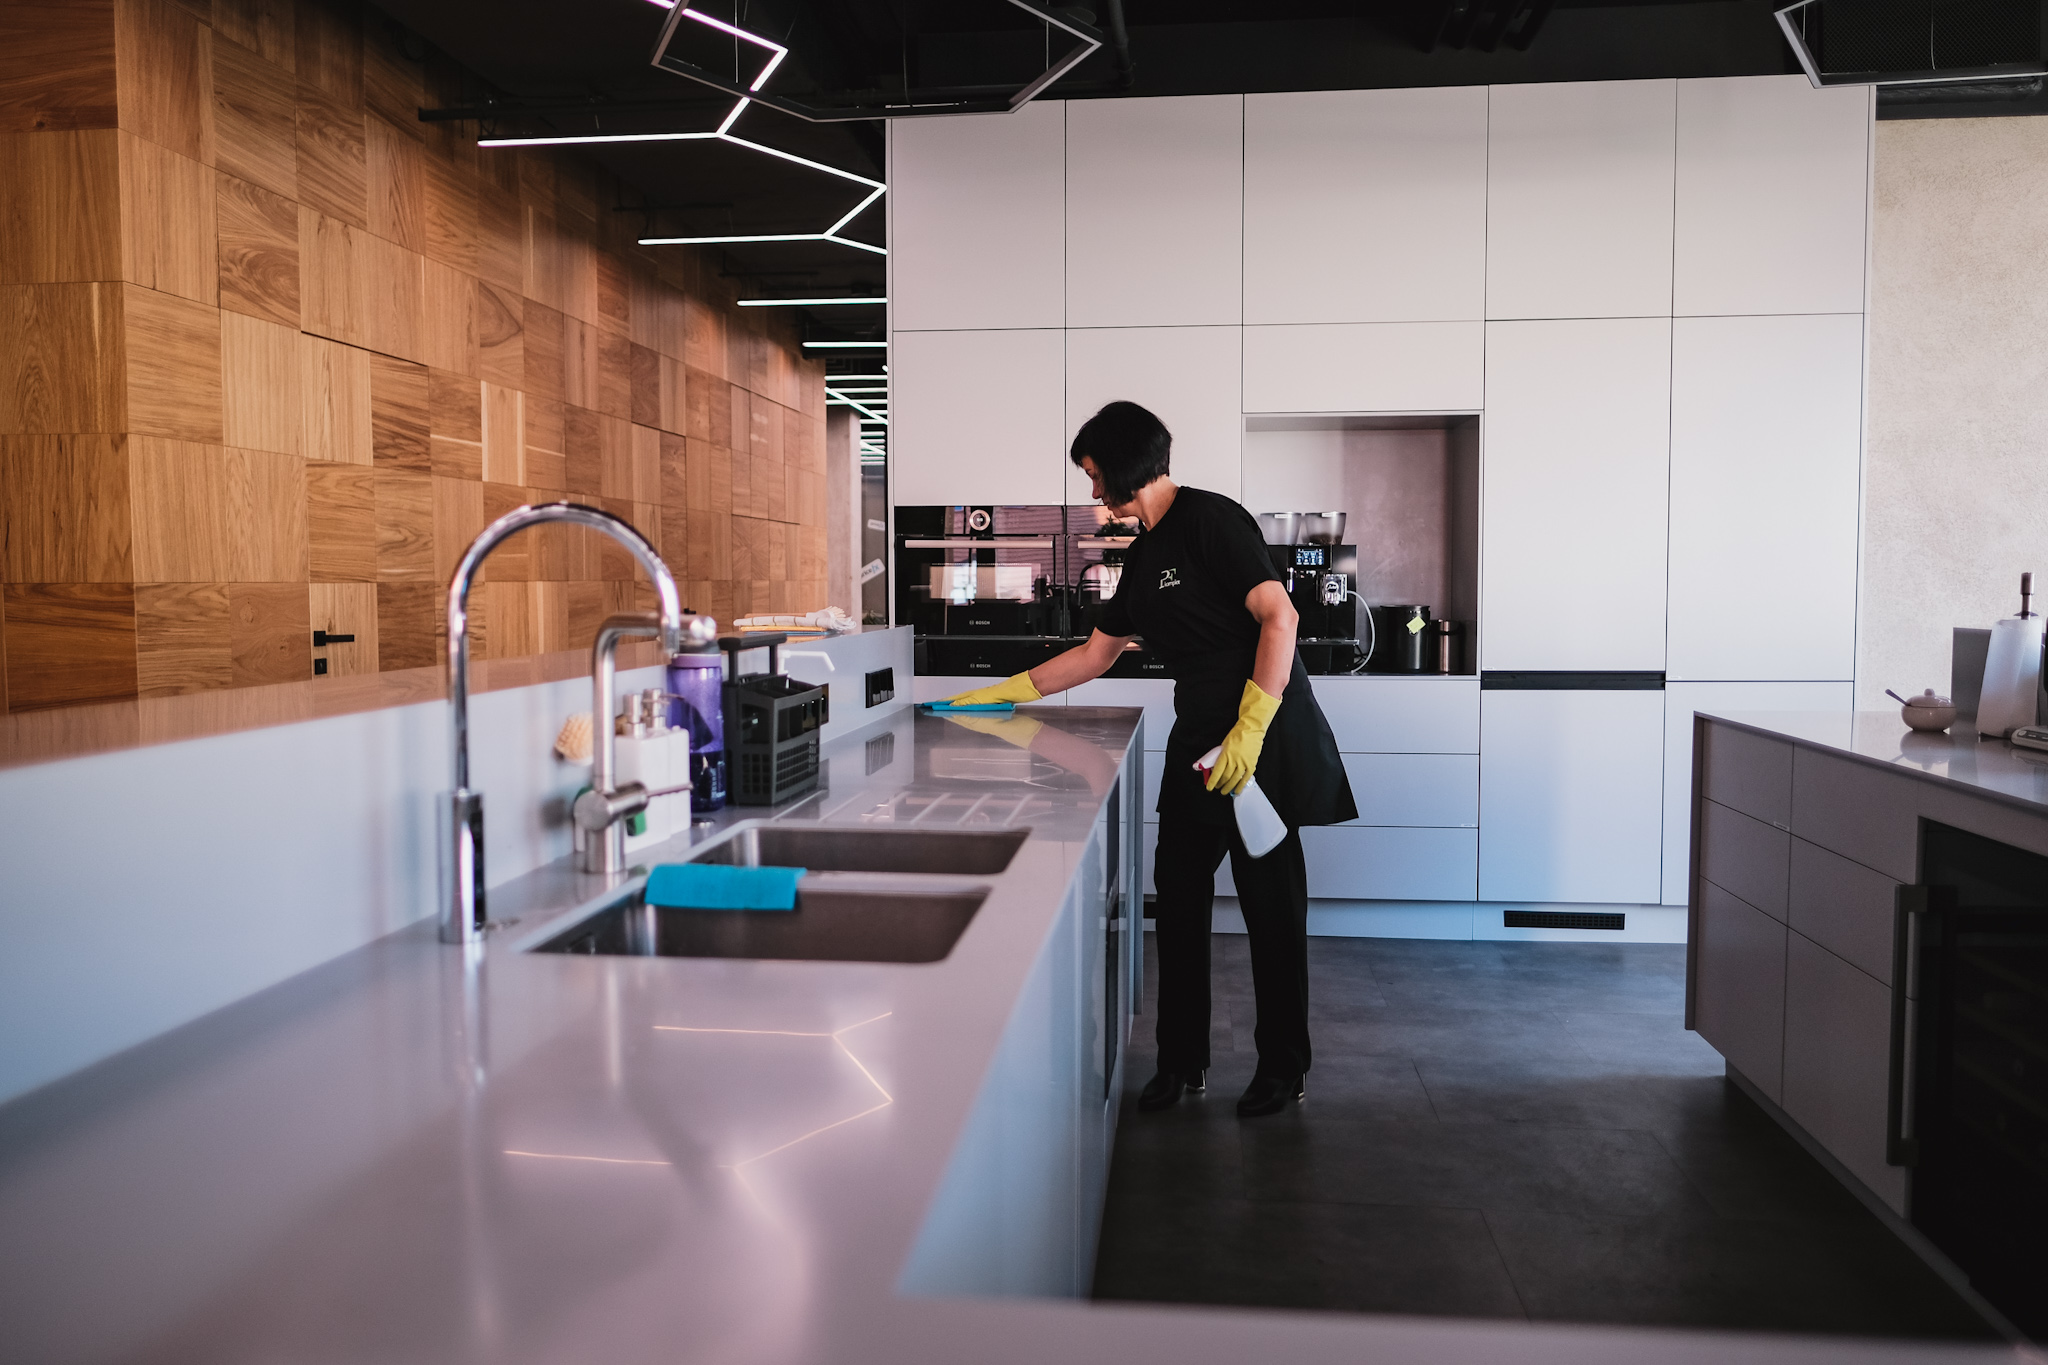 Pracovnice společnosti PF Komplet umývá pracovní plochu v kuchyni, která je součástí komerčních prostorů.